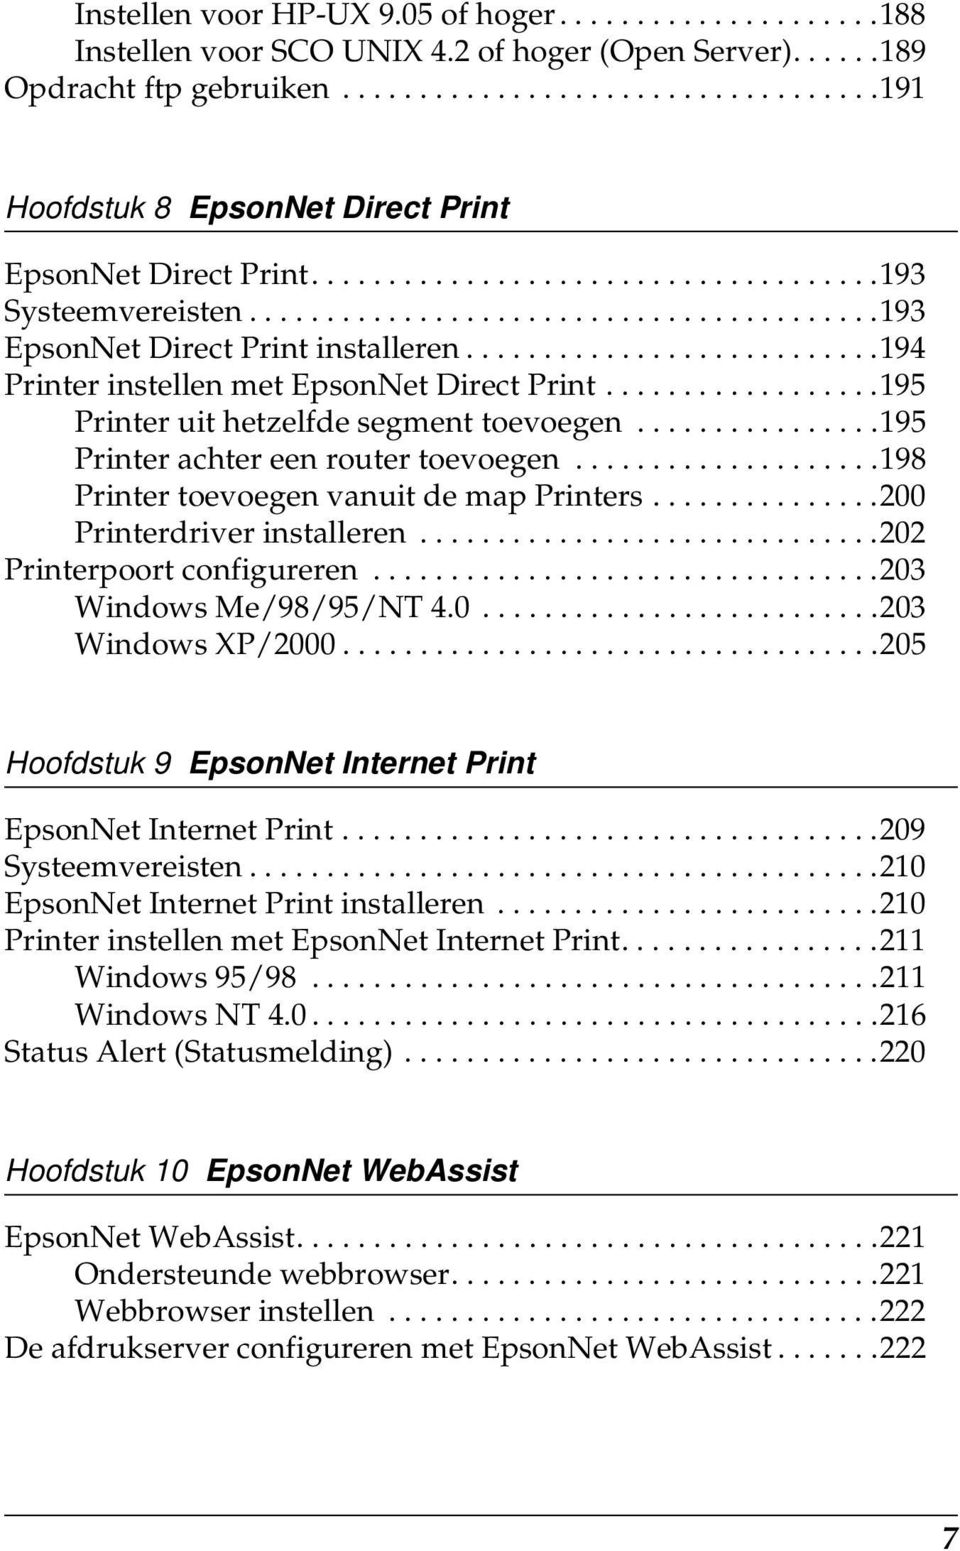 ..........................194 Printer instellen met EpsonNet Direct Print..................19 Printer uit hetzelfde segment toevoegen................19 Printer achter een router toevoegen.